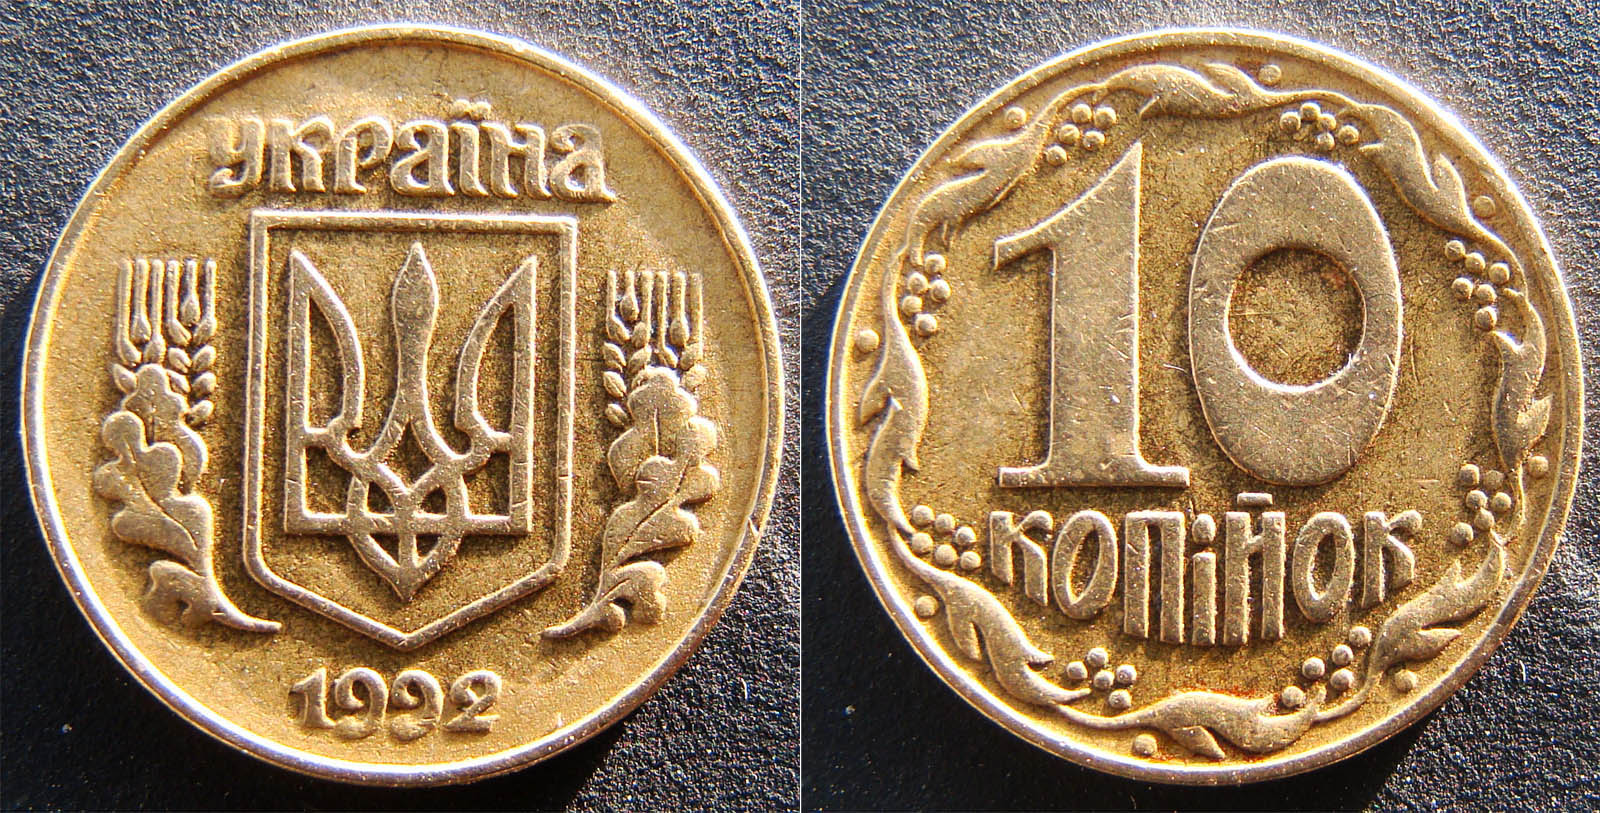 10 копеек 1992. Украина монета 10 копеек 1992. Монета 10 копеек Украина 1992 год. 10 Копеек 1992 года. Украинская копейка монета.